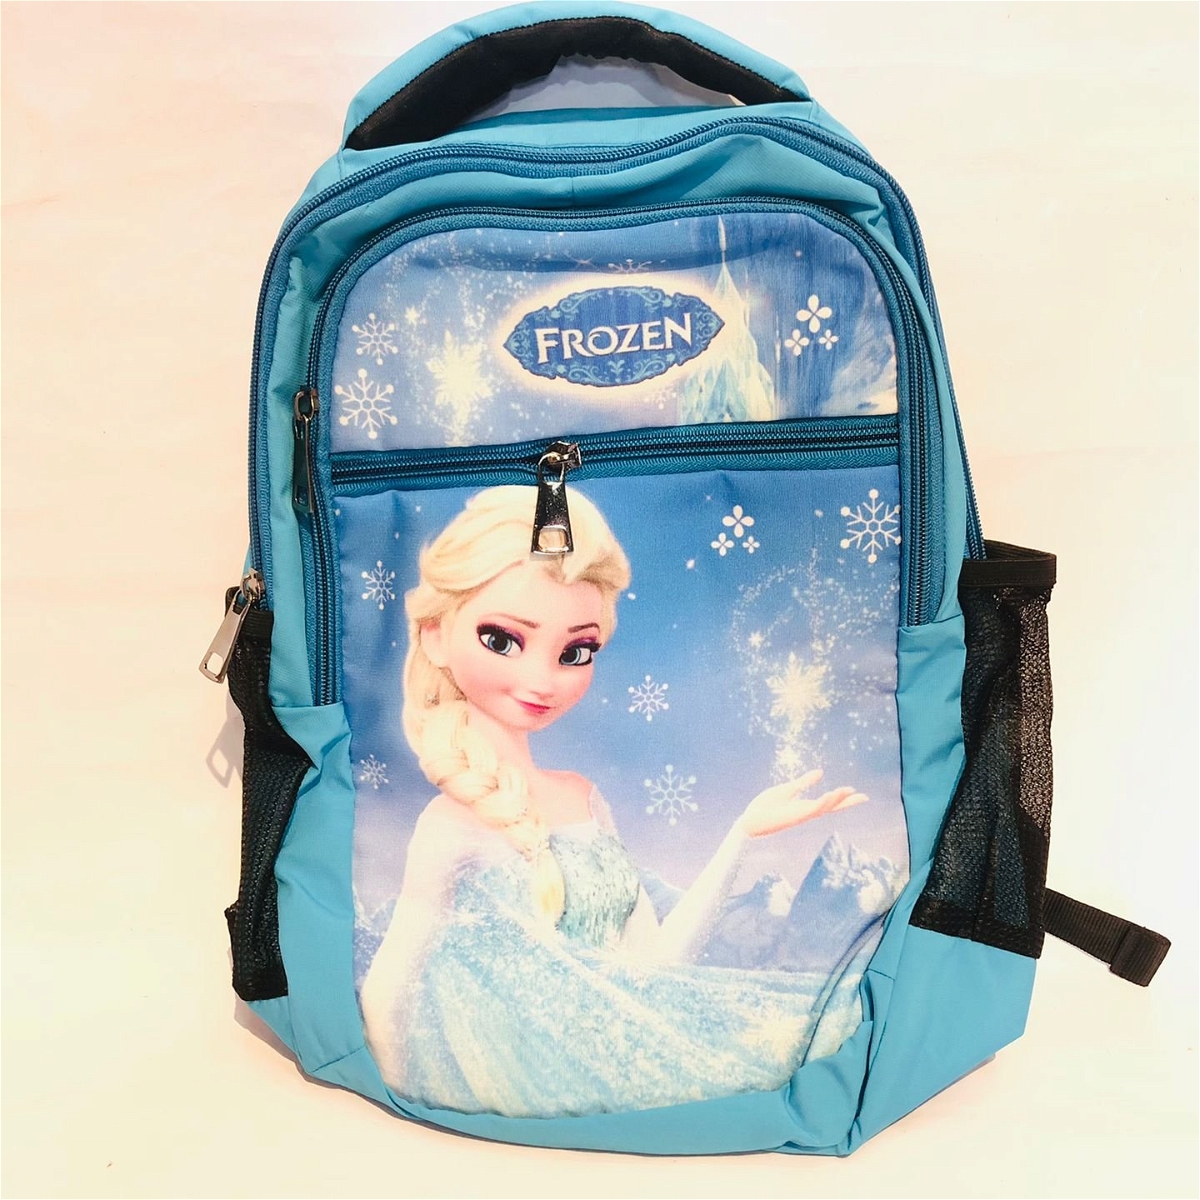 Kids Cartoon School Bag - Frozen